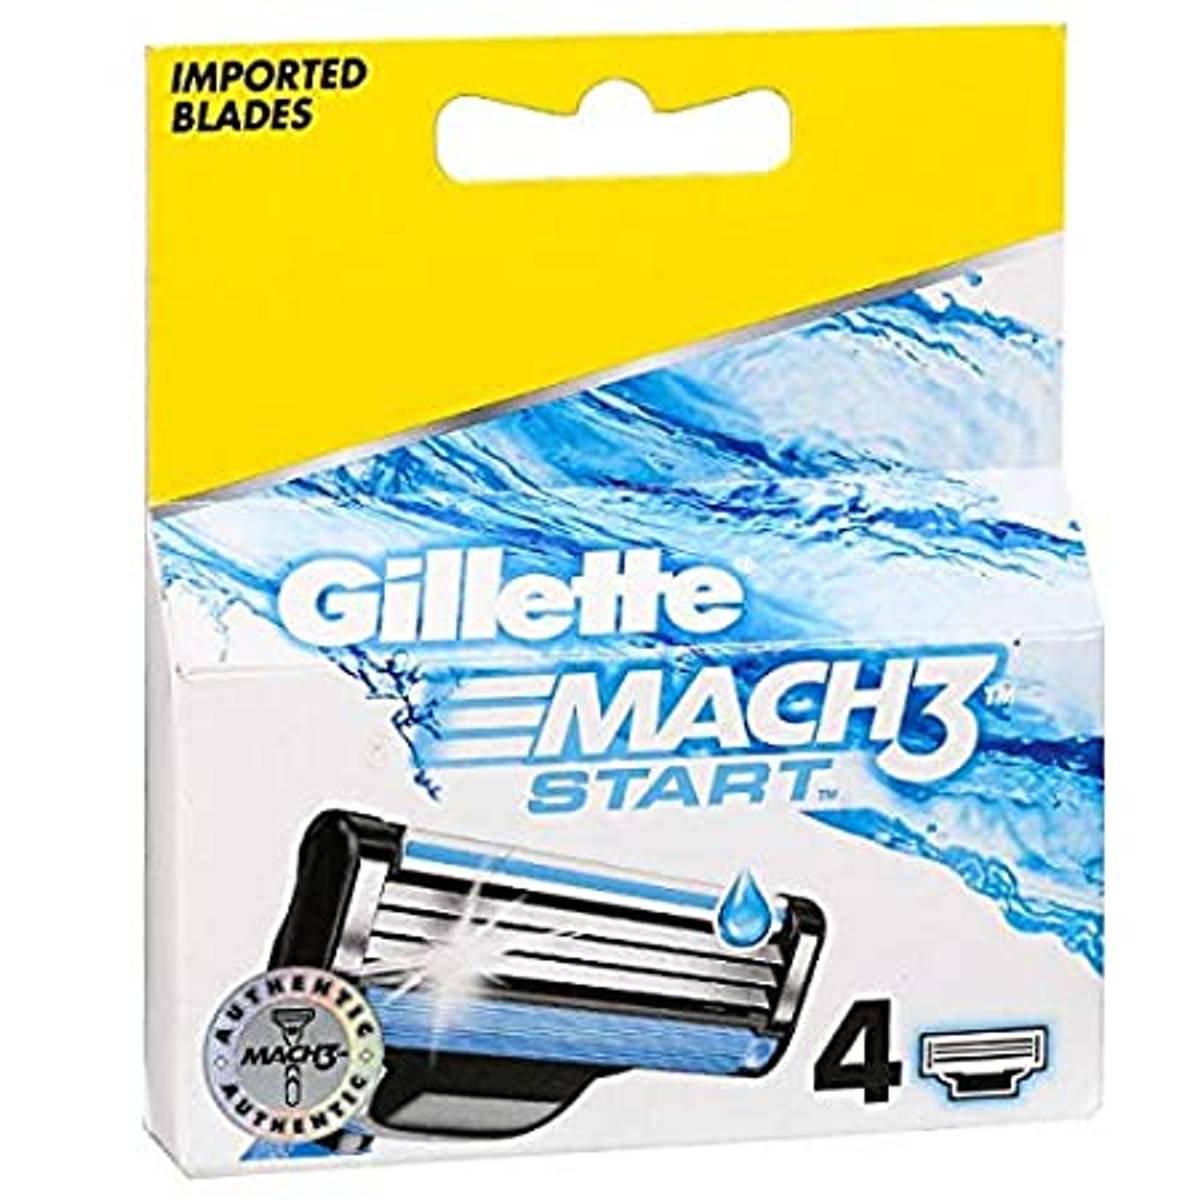 Gillette Mach 3 Start Razor Blade (4 Refills)